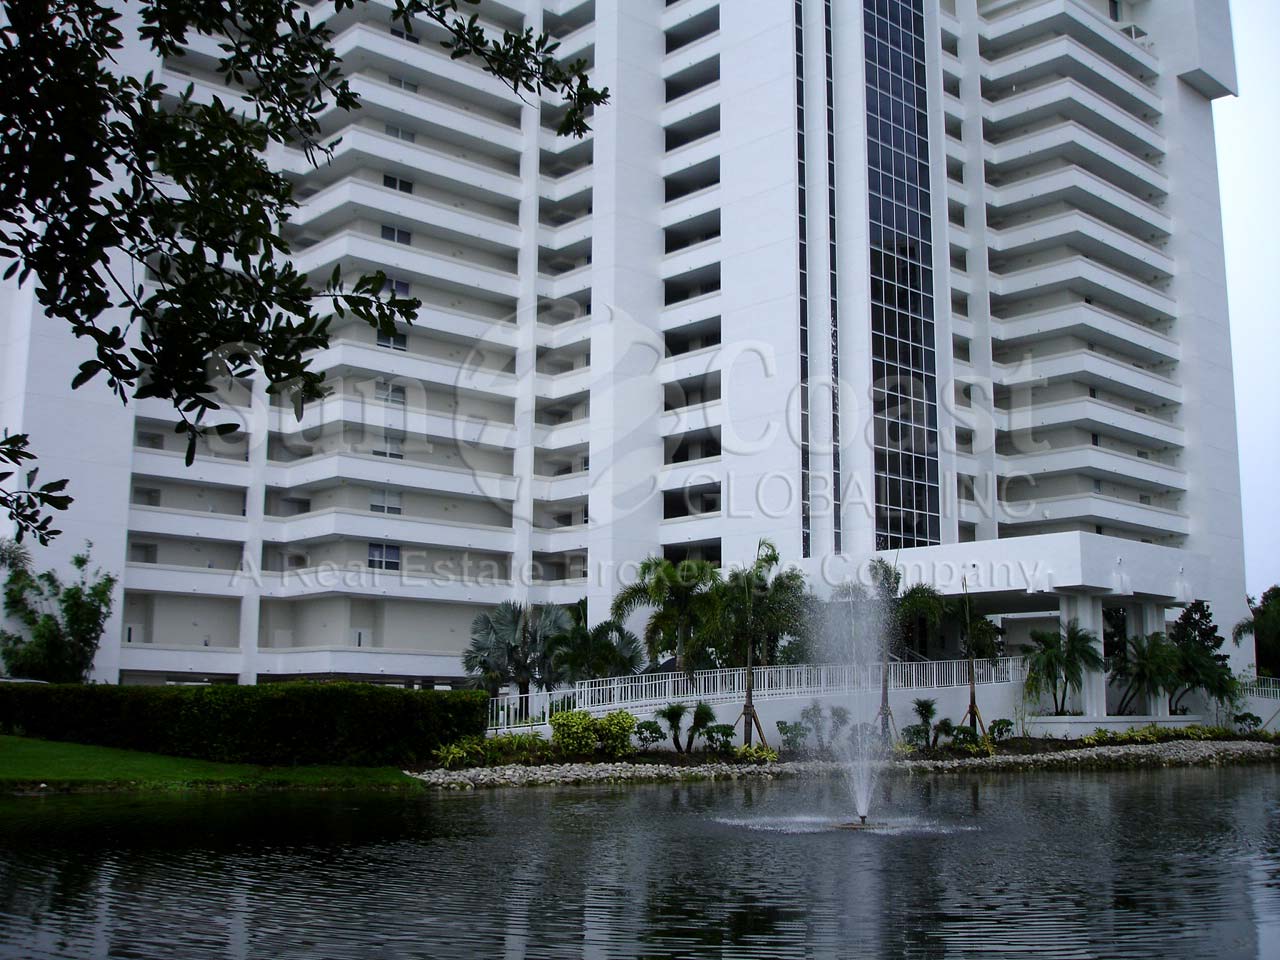 St Lucia Condominium Building